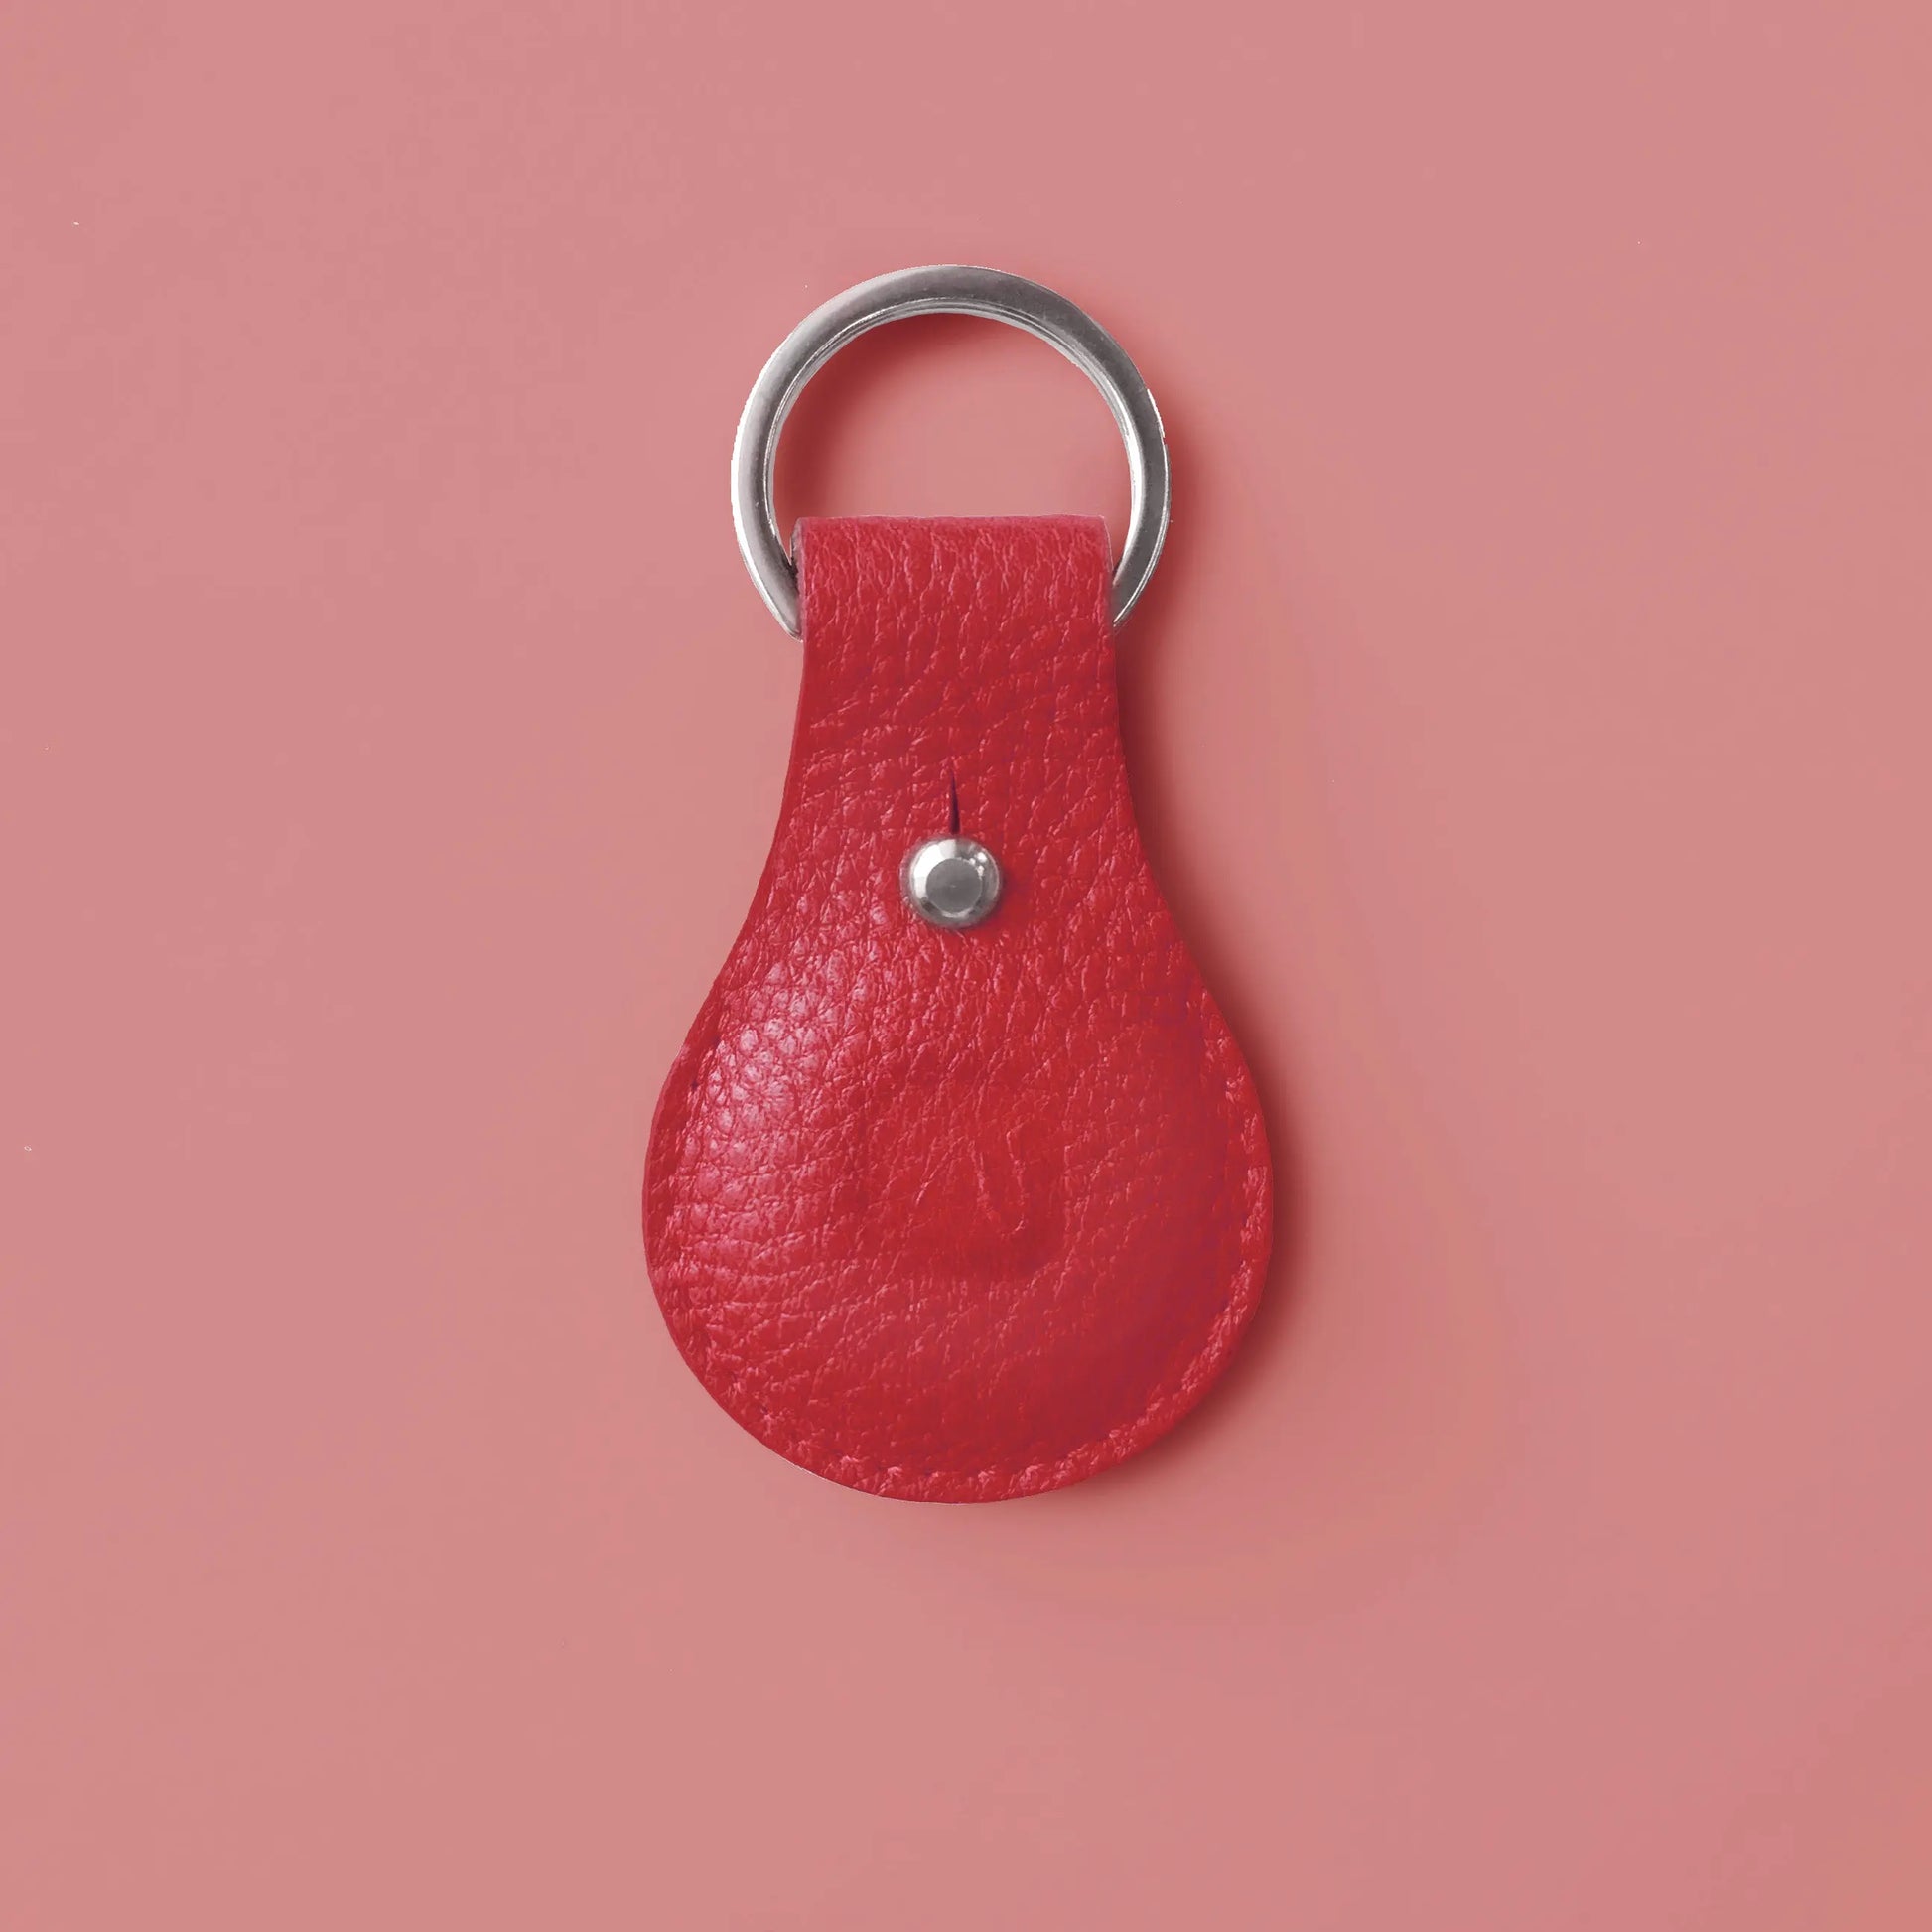 Airtaghülle aus rotem Leder mit Schlüsselring